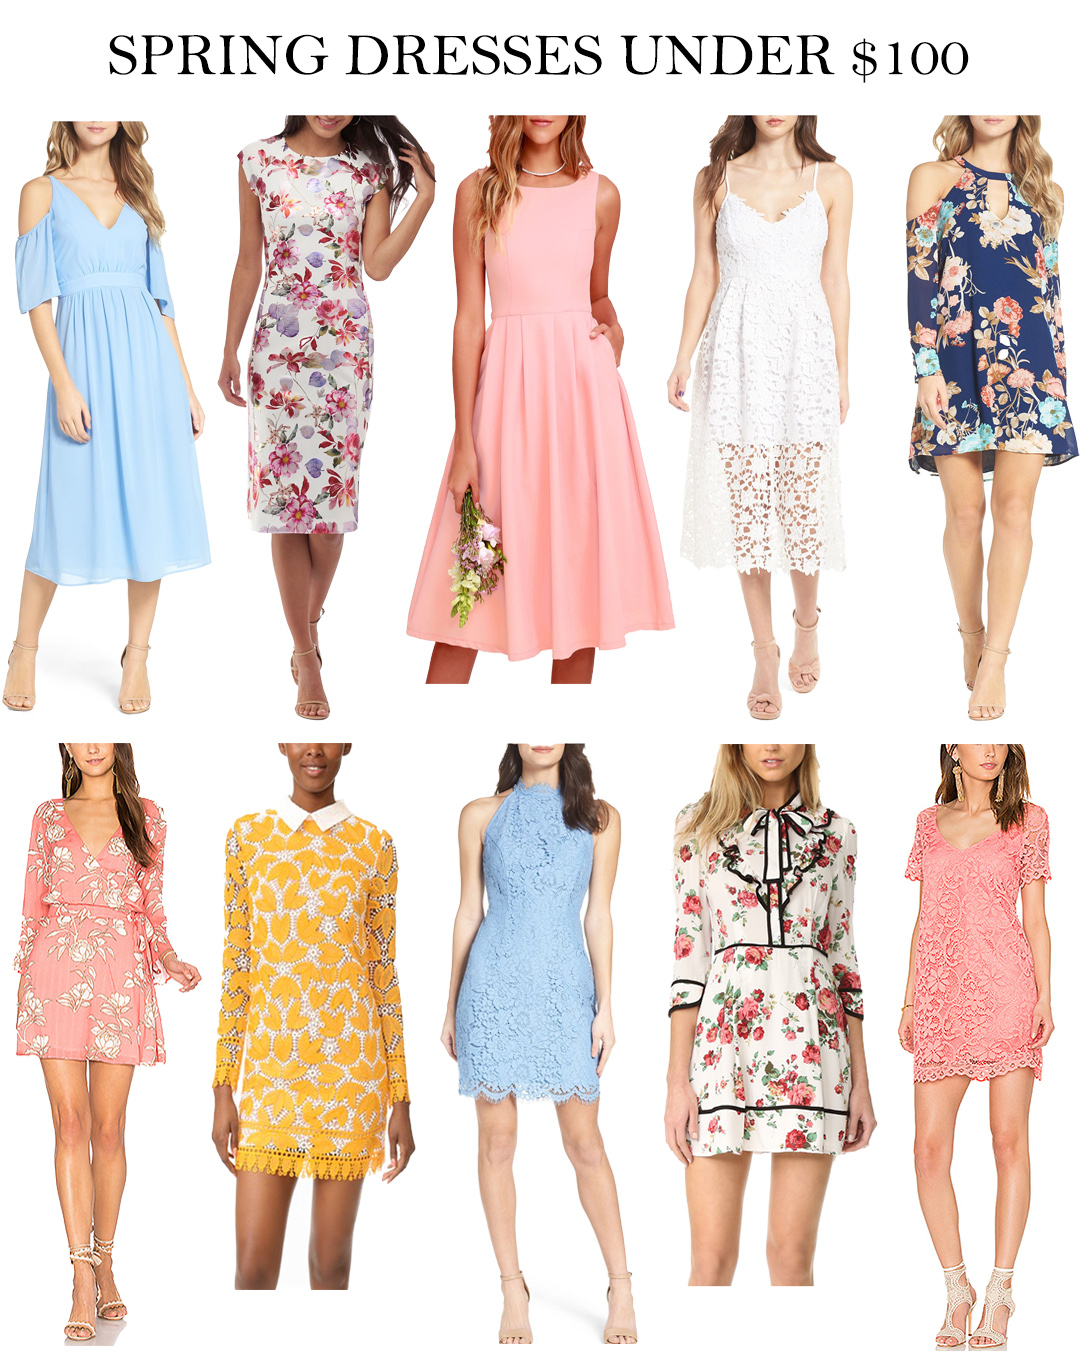 Spring / Easter Dresses Under $100 - LifetoLauren